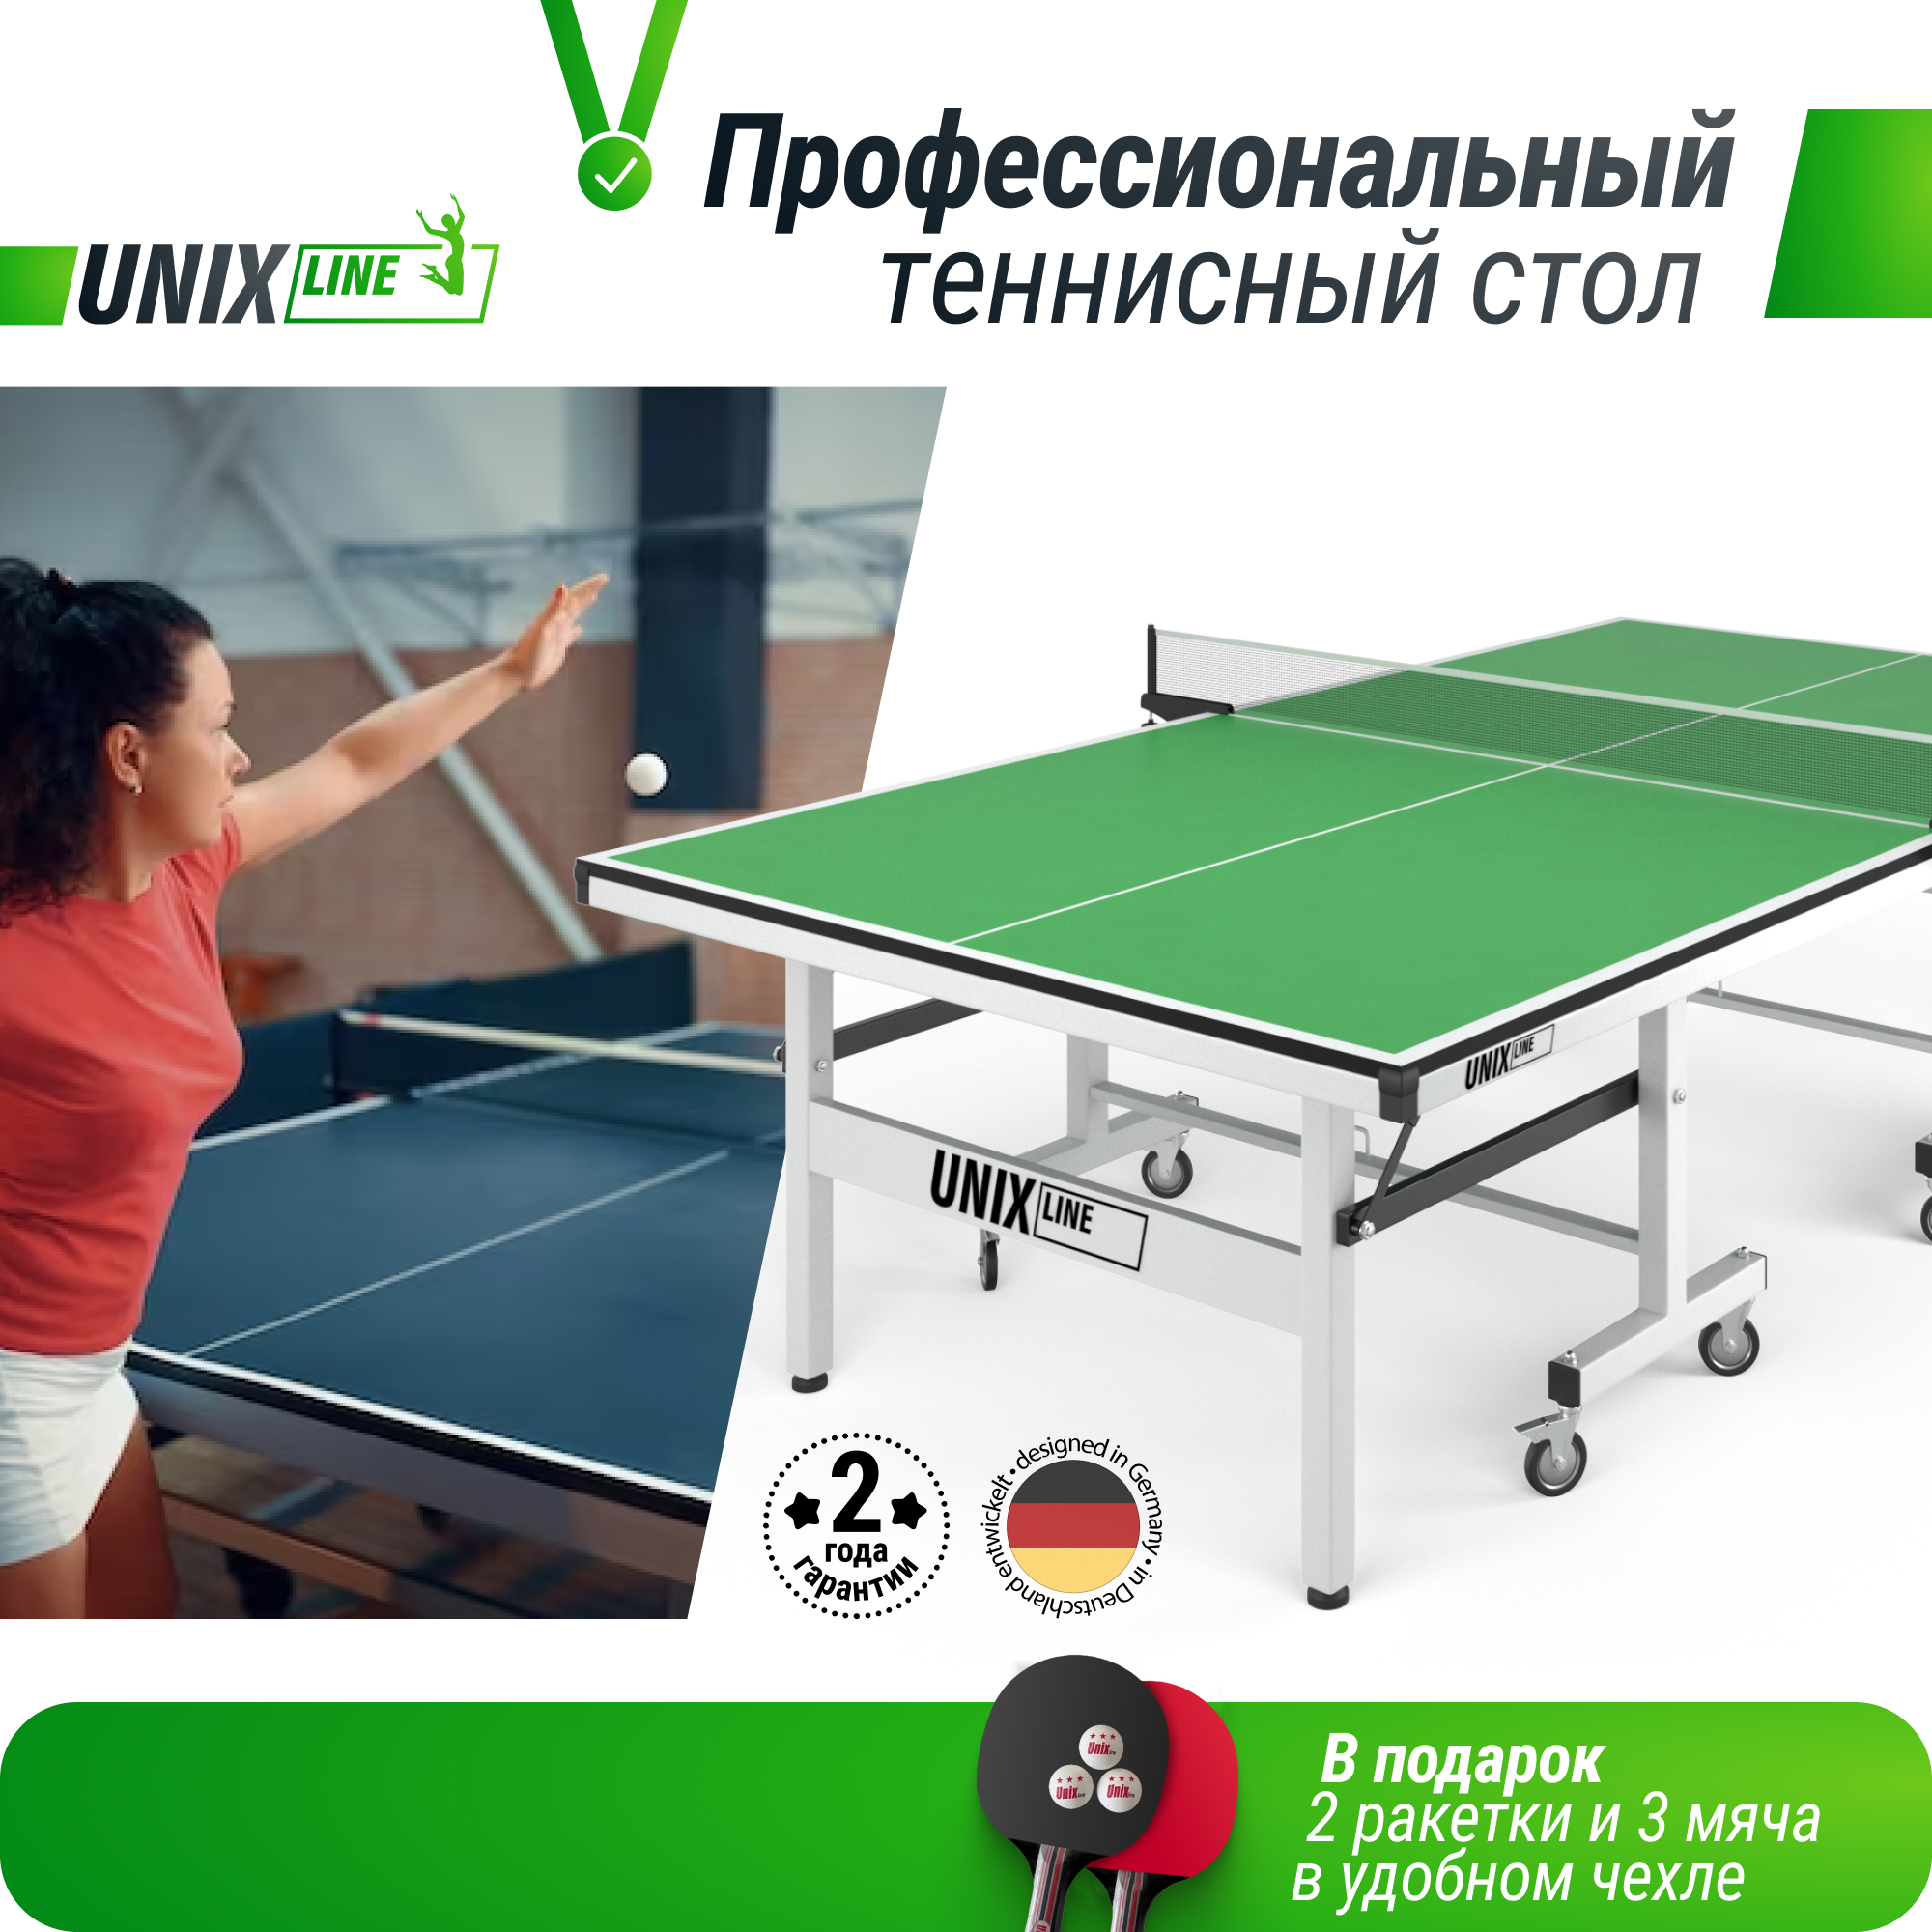 Профессиональный теннисный стол UNIX Line 25 mm MDF (Green) - 3 